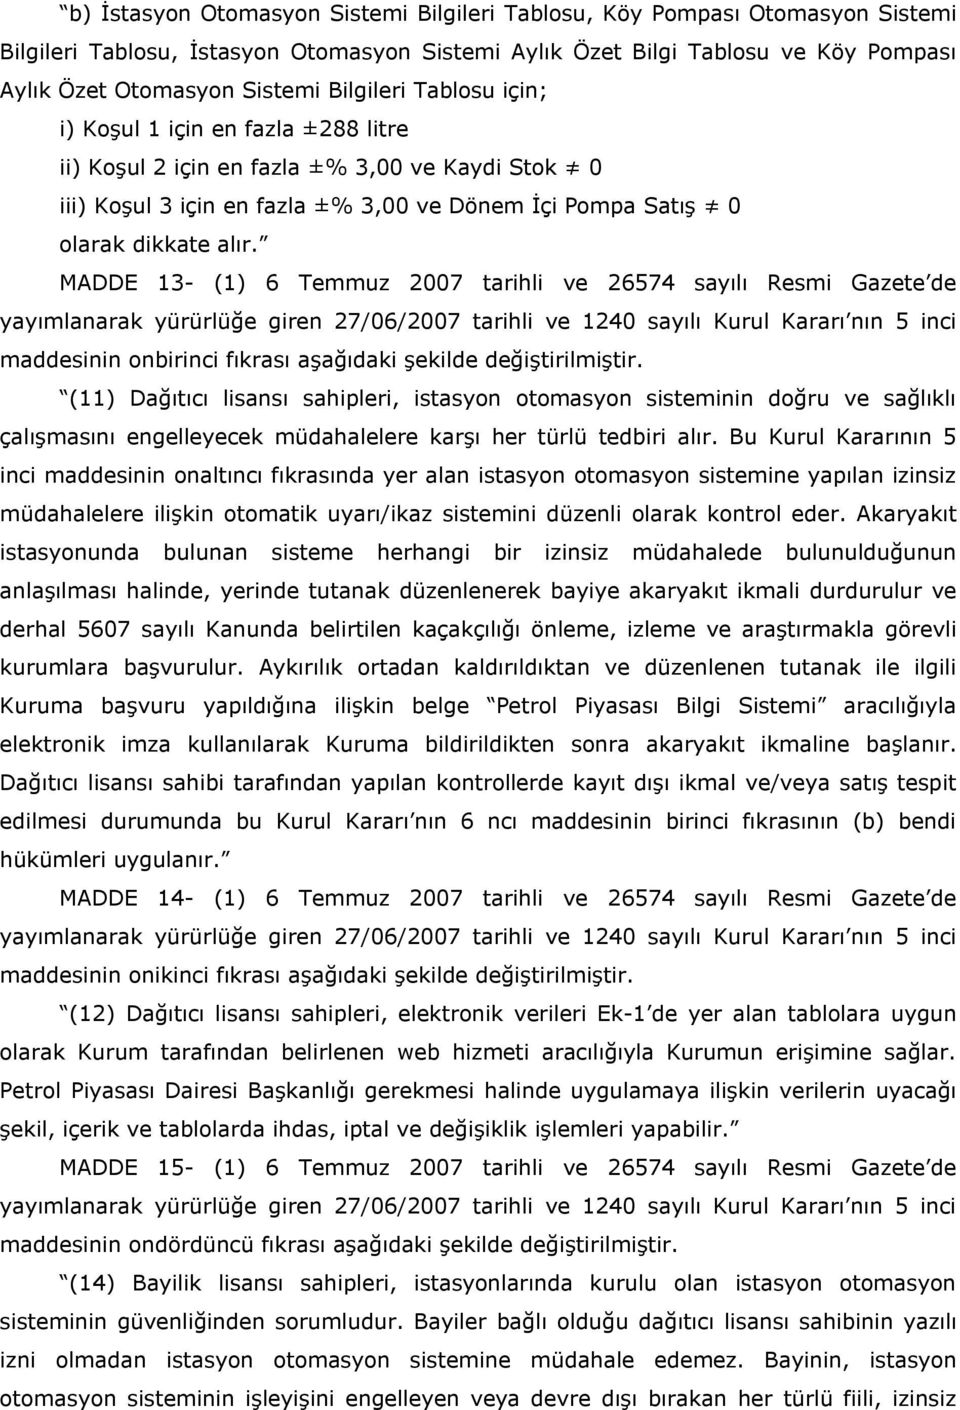 MADDE 13- (1) 6 Temmuz 2007 tarihli ve 26574 sayılı Resmi Gazete de maddesinin onbirinci fıkrası aşağıdaki şekilde değiştirilmiştir.